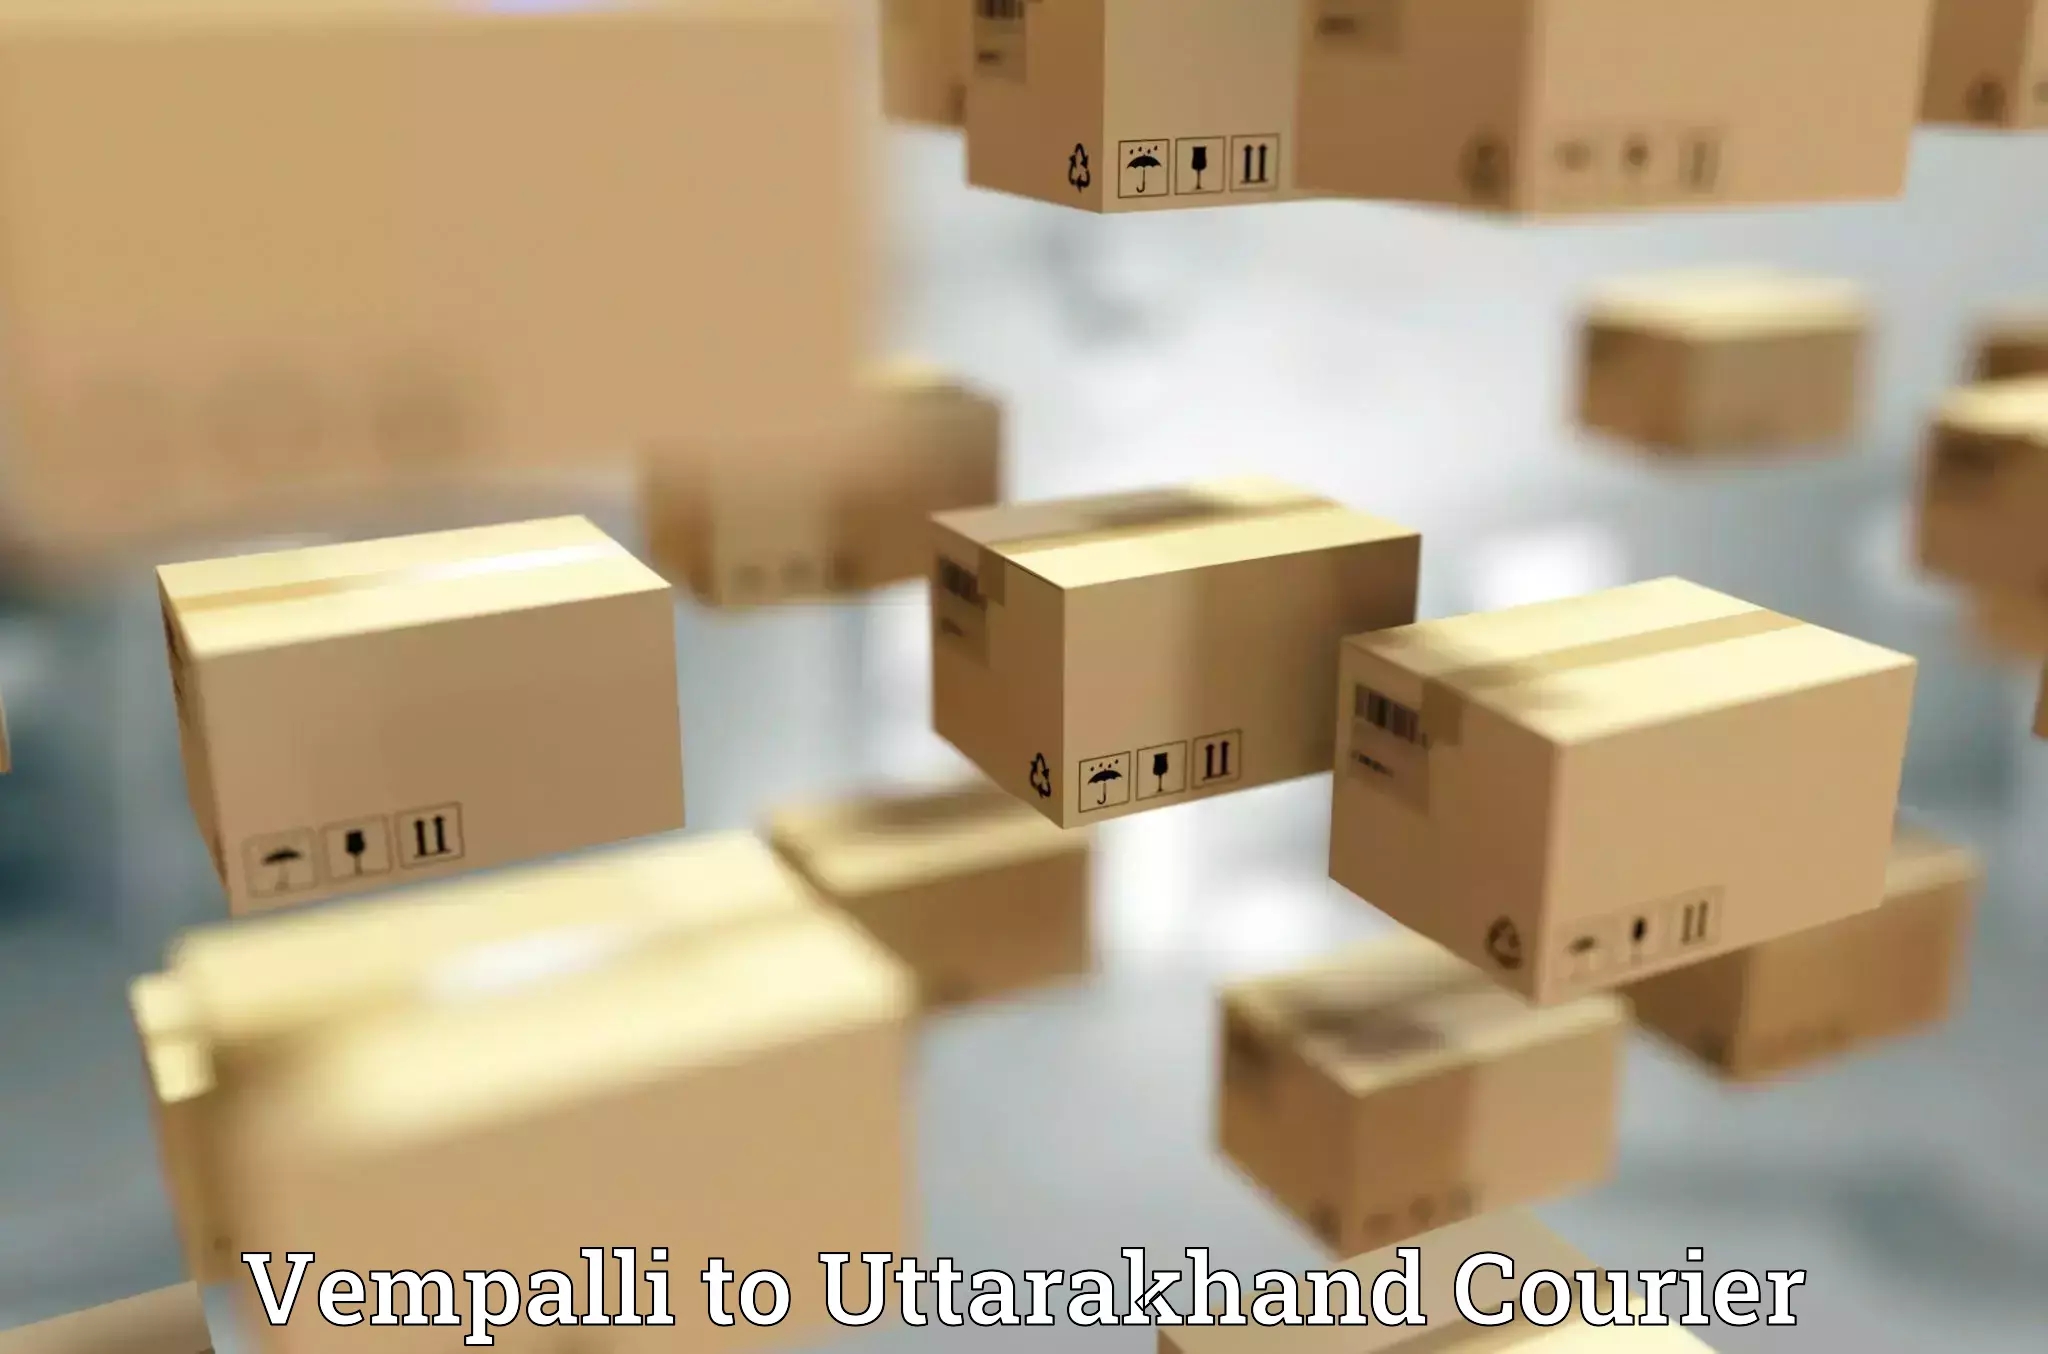 Luggage shipment specialists Vempalli to Uttarakhand